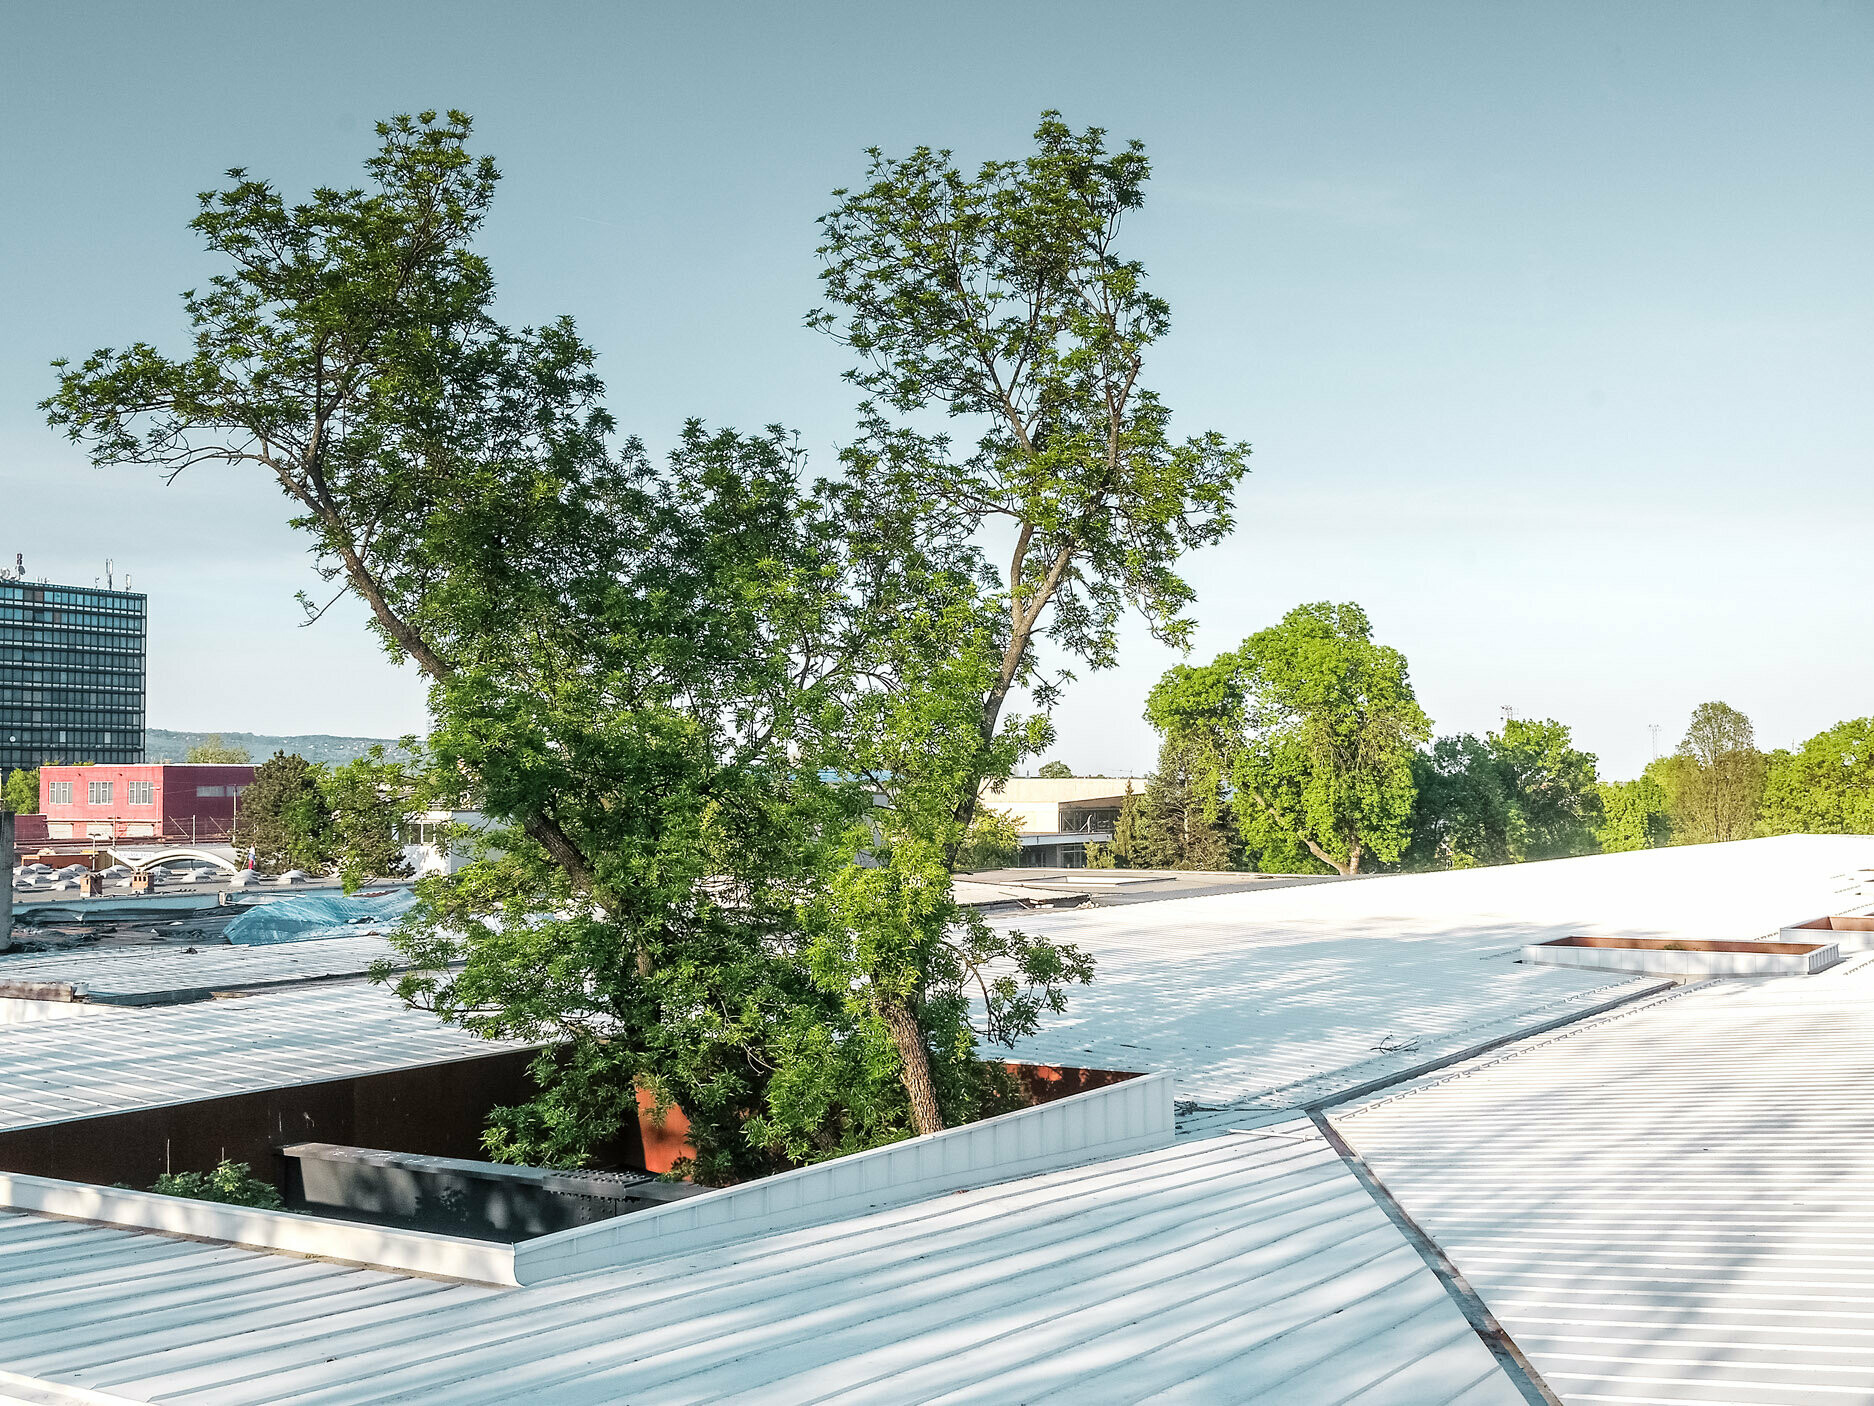 Na obrázku autobusová zastávka v Chorvatsku s bílou střechou Prefalz od PREFA. Velké stromy prorážejí střechu na několika místech a dodávají konstrukci zvláštní architektonický rys. V pozadí je vidět více budov a vysoká kancelářská věž. Obrázek ilustruje kombinaci funkční architektury a přírodního prostředí, přičemž bílá střecha a zeleň stromů vytvářejí výrazný kontrast.